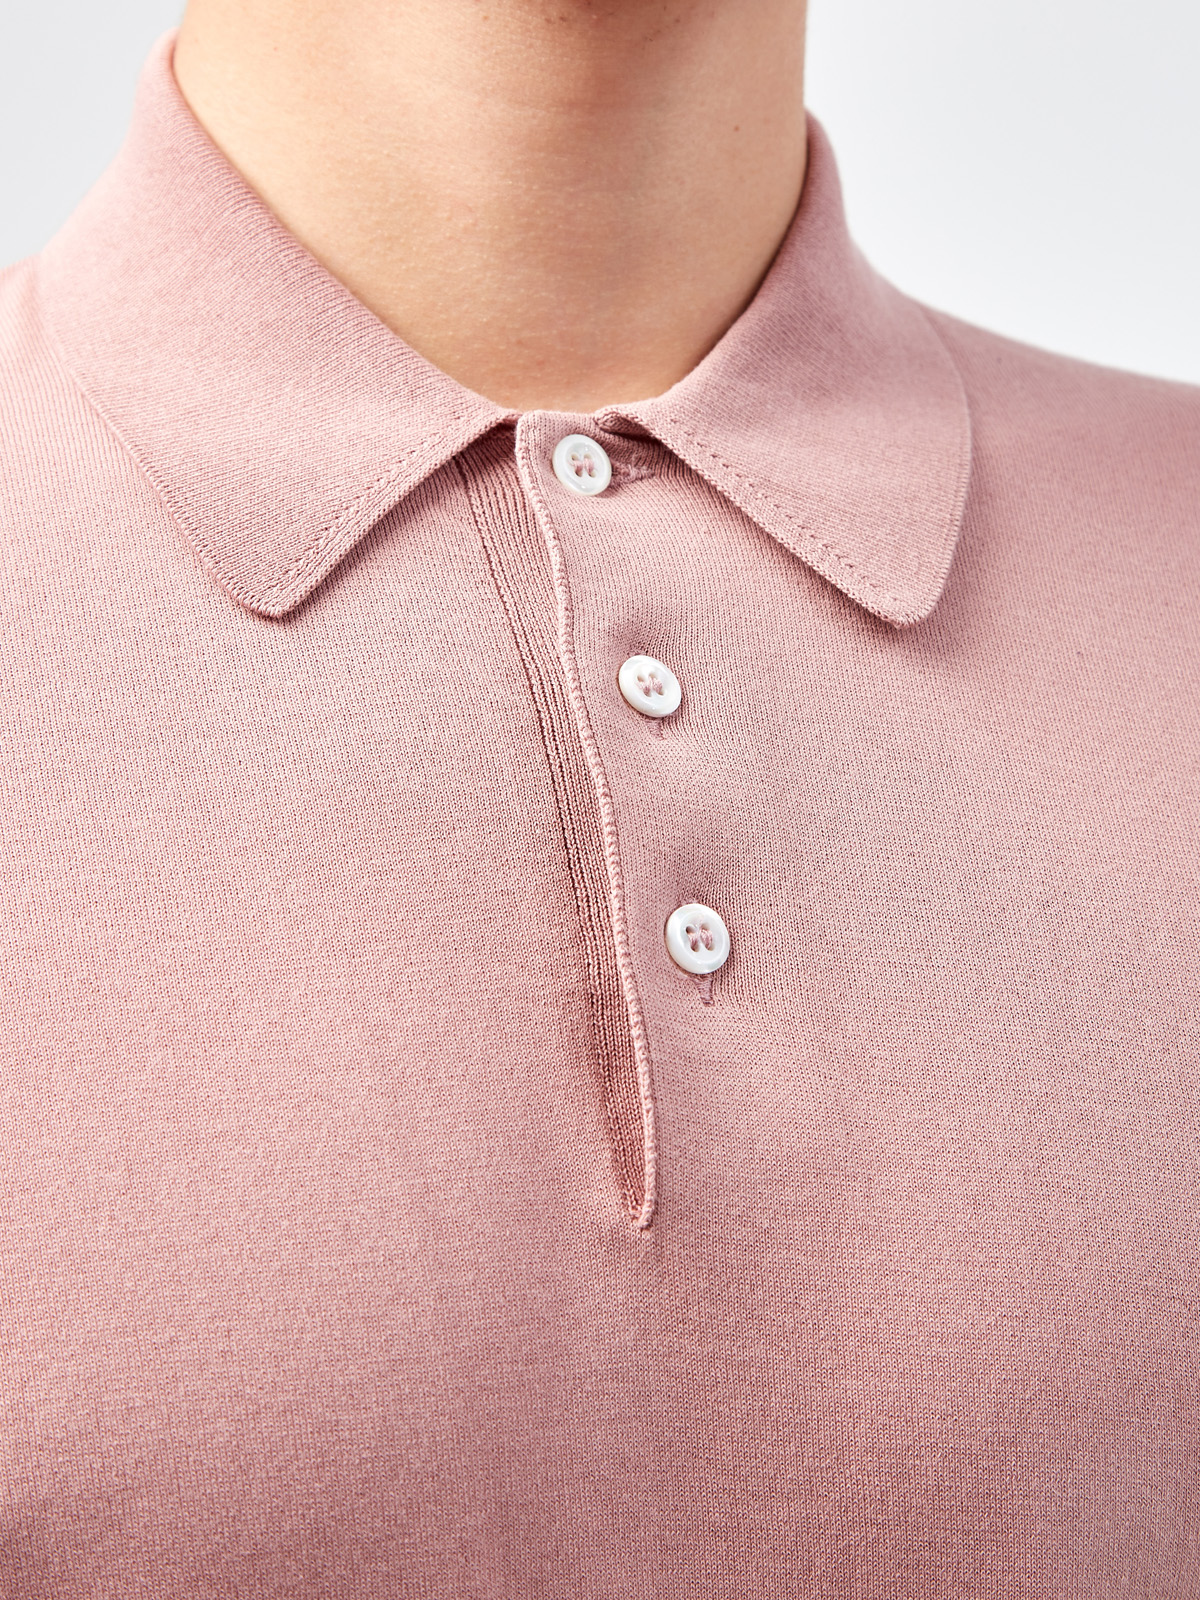 Джемпер-поло в стиле casual из хлопковой пряжи GRAN SASSO, цвет розовый, размер 50;52;54;56;58;48 - фото 5